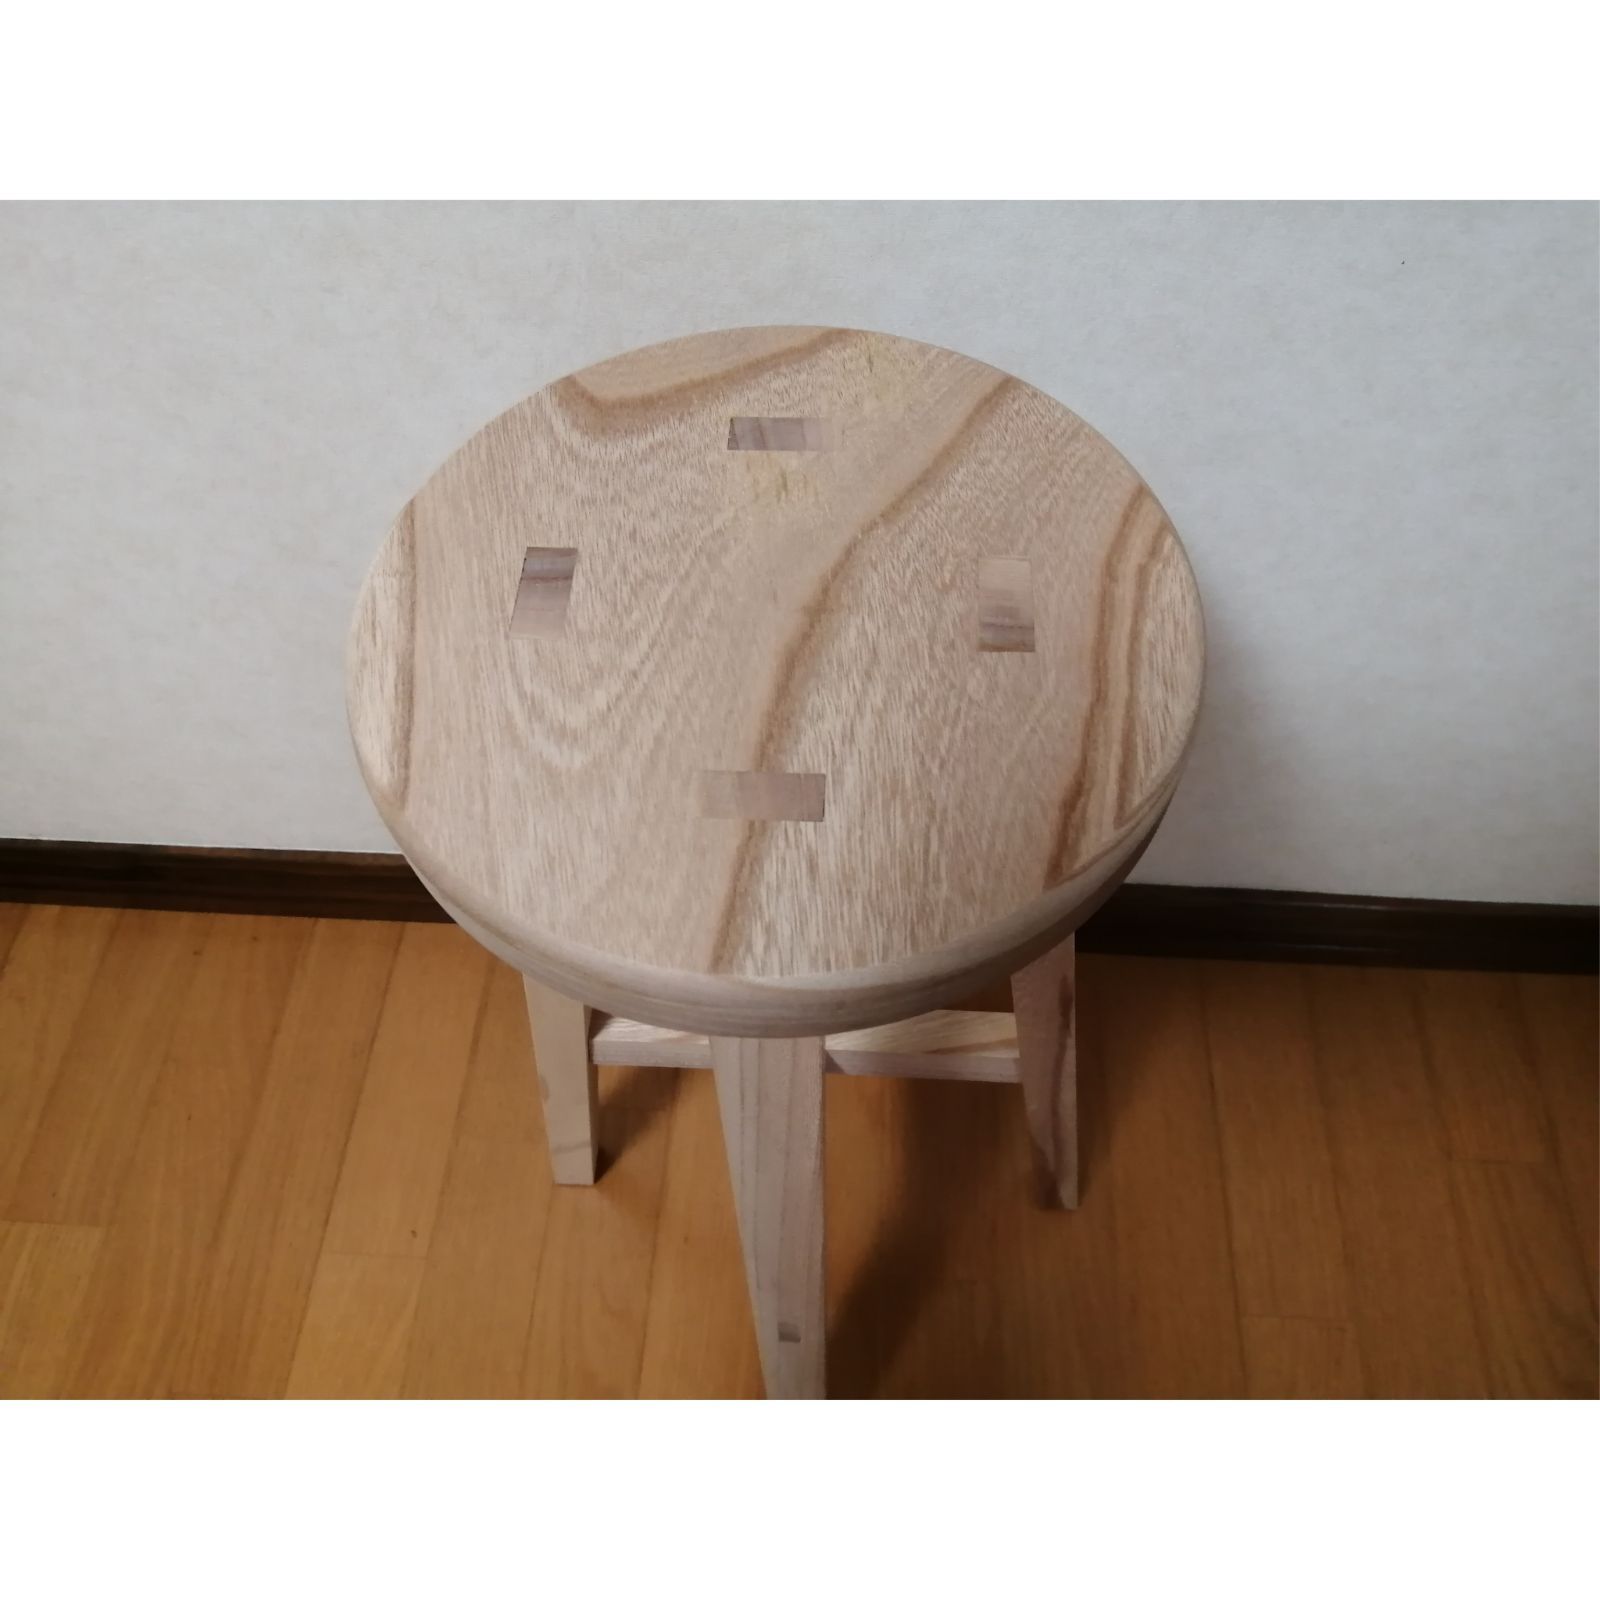 欅材スツール 高さ60cm 丸椅子 stool - スツールショップ - メルカリ